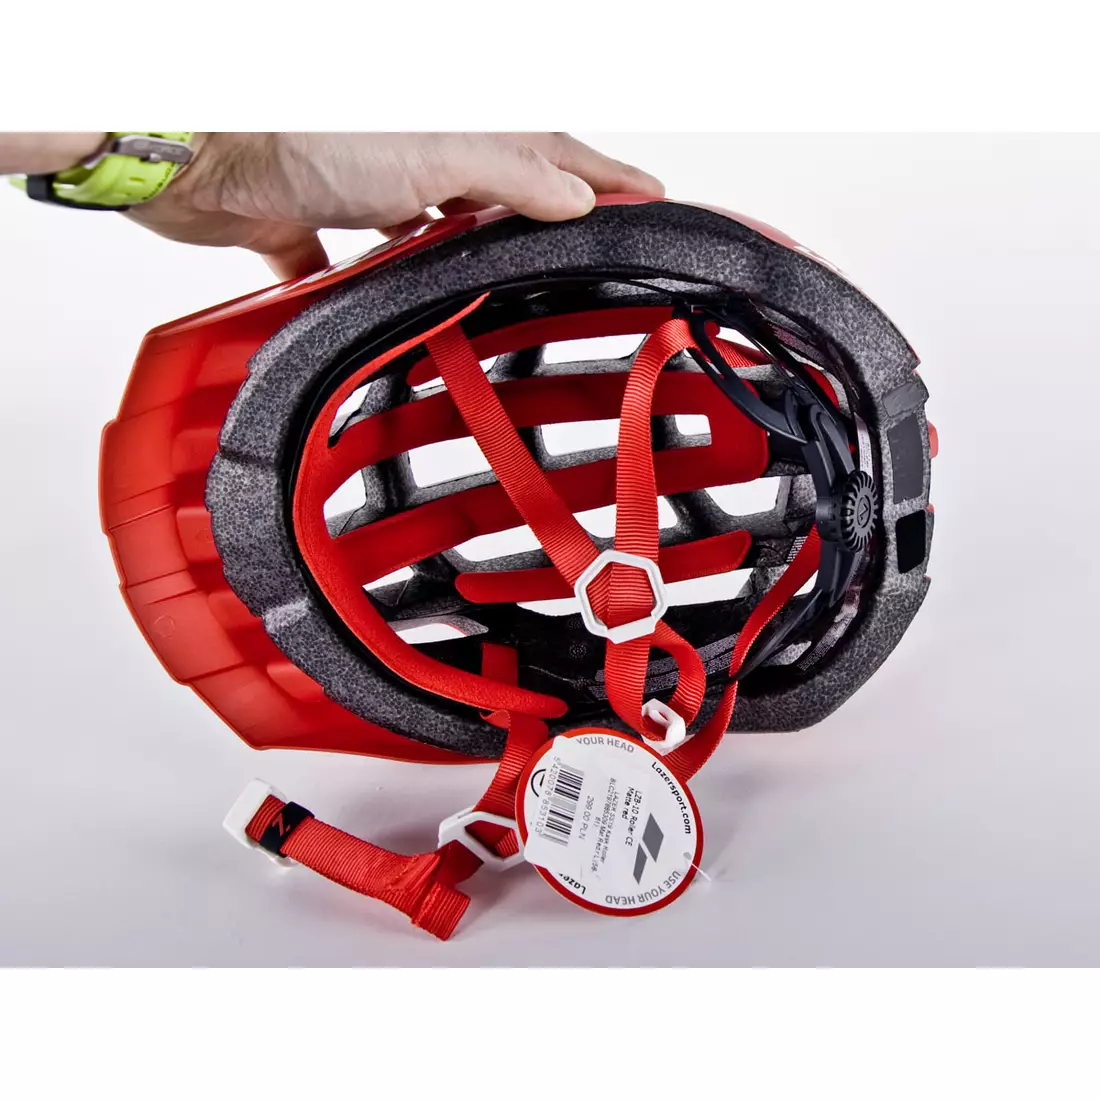 LAZER ROLLER MTB kerékpáros sisak TS+ piros matt